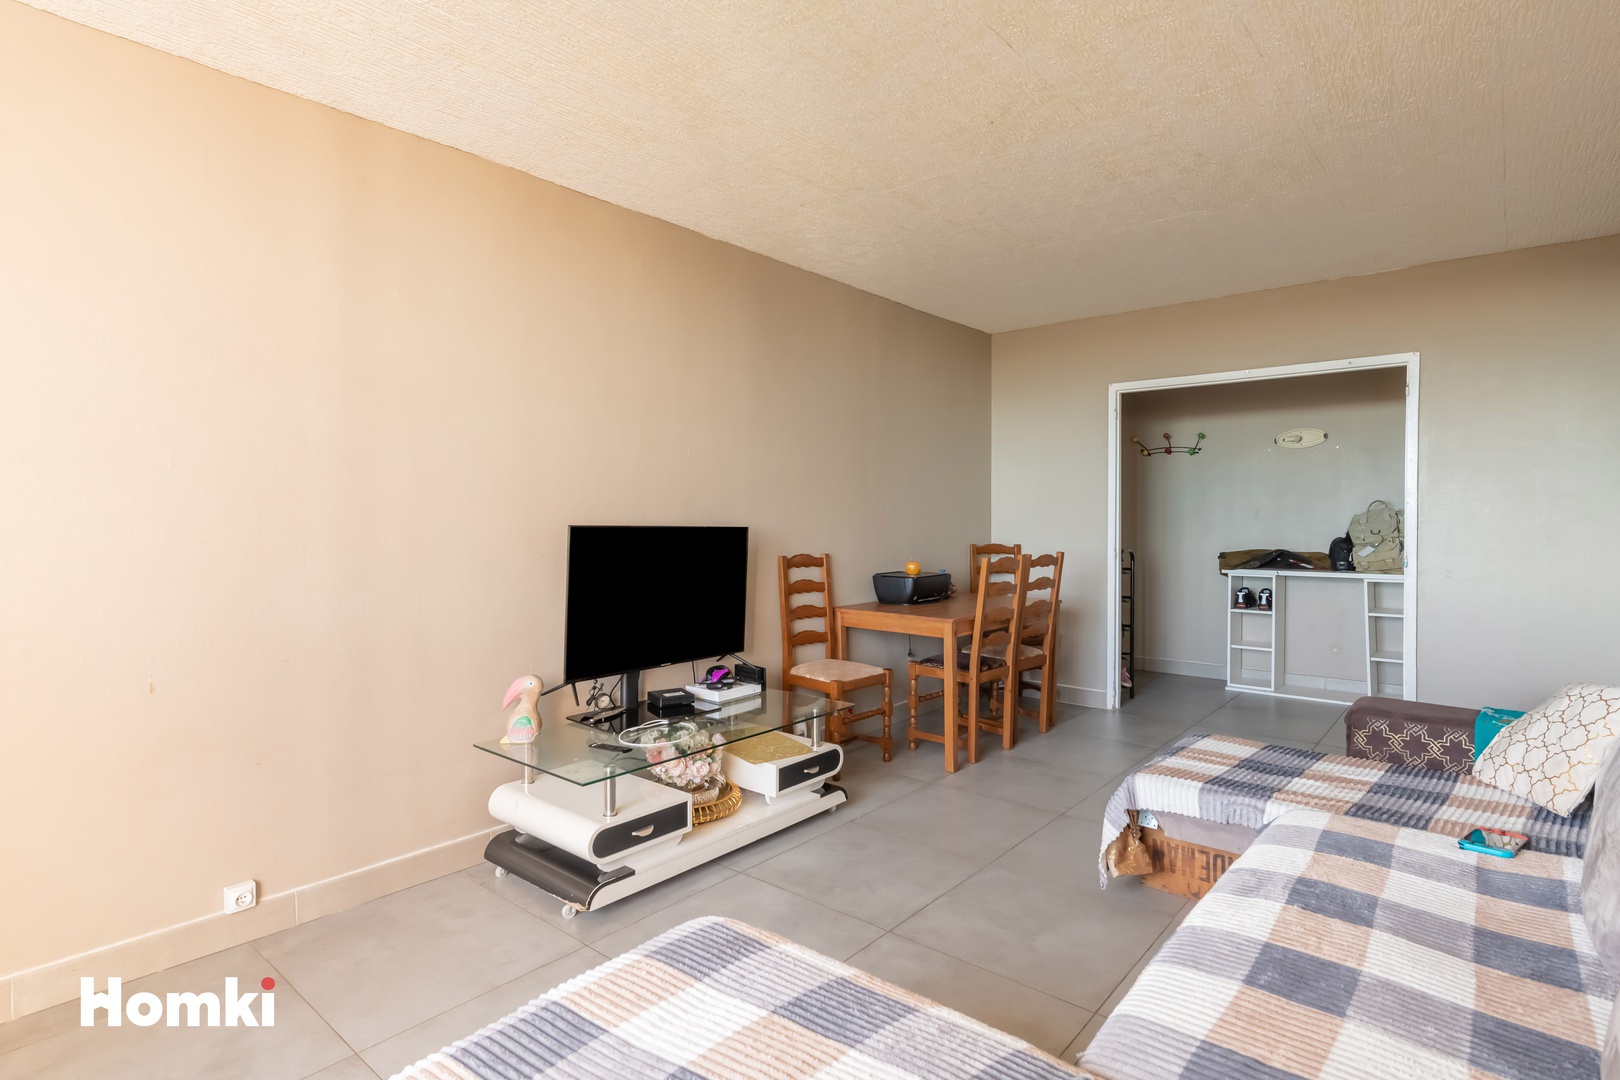 Homki - Vente Appartement  de 66.0 m² à Nîmes 30900